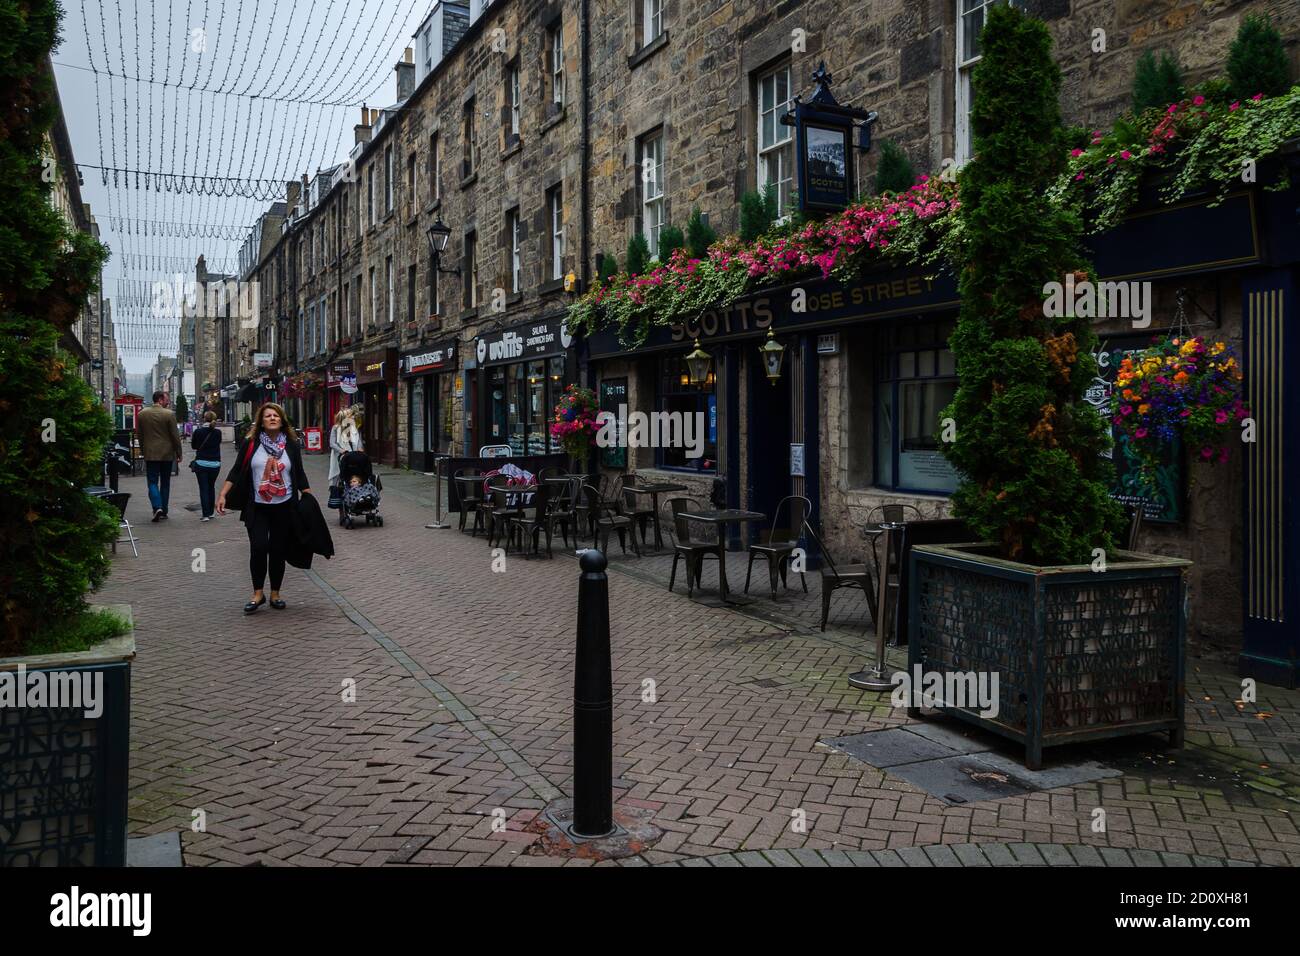 Calles comerciales con edificios de piedra en la nueva ciudad de edimburgo, Escocia Foto de stock